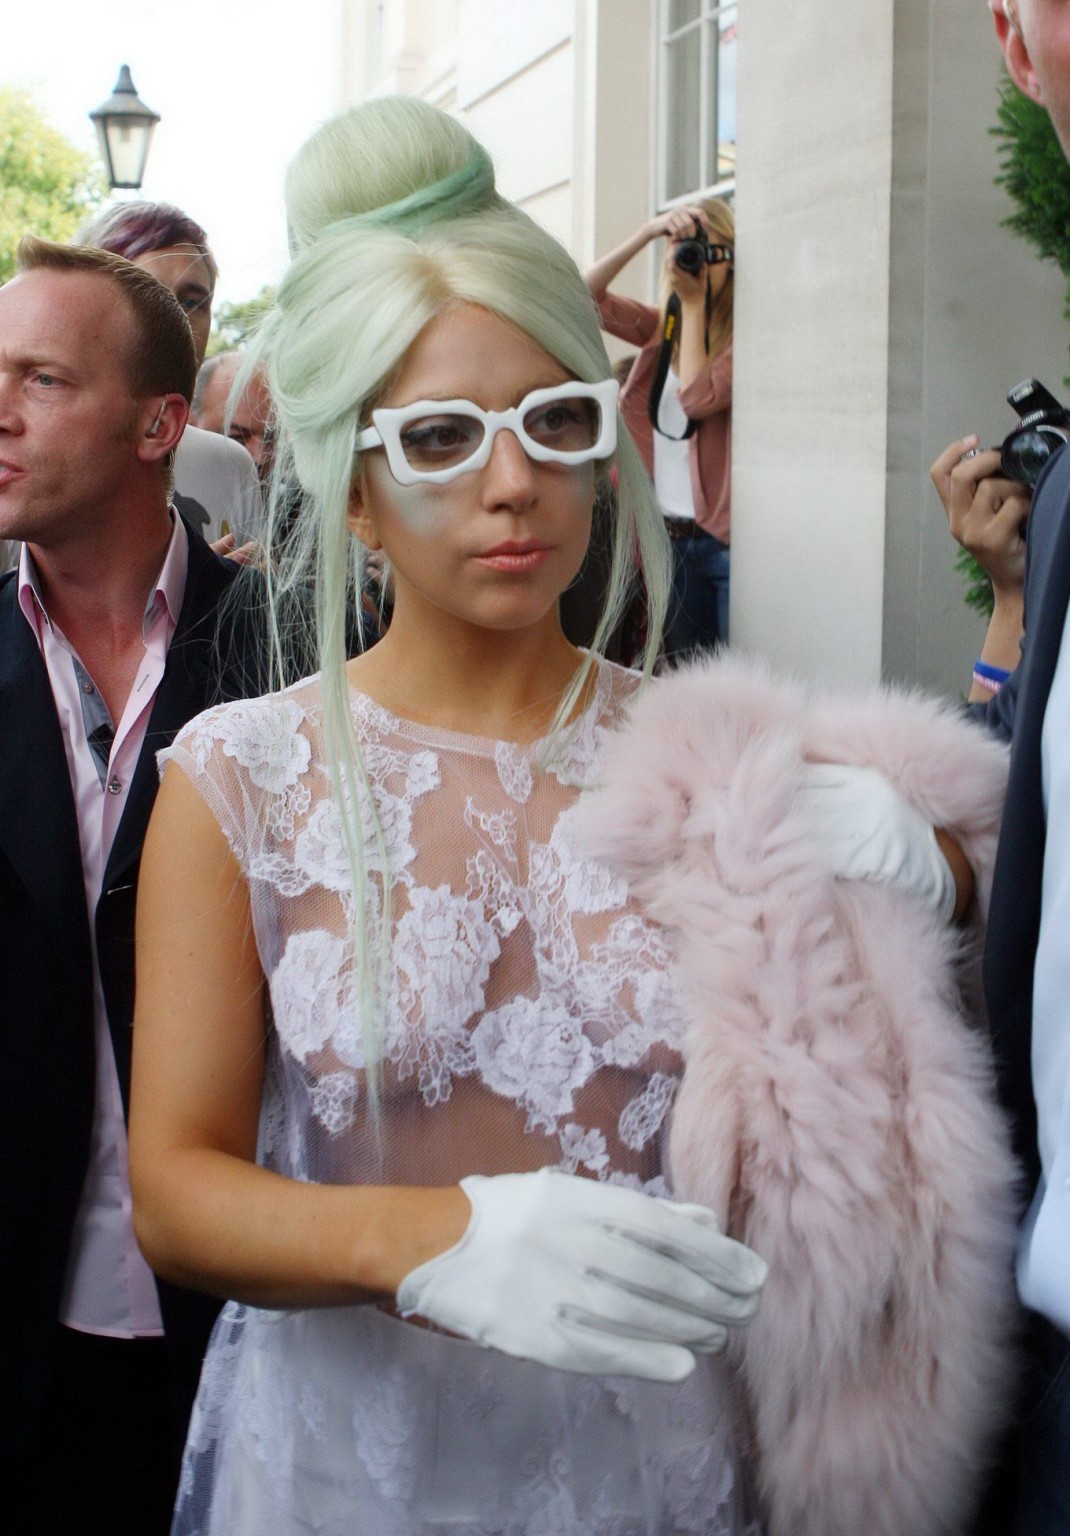 Lady Gaga, seins nus dans une robe en dentelle transparente, se rend aux studios de la chaîne Itv à Londres.
 #75286344